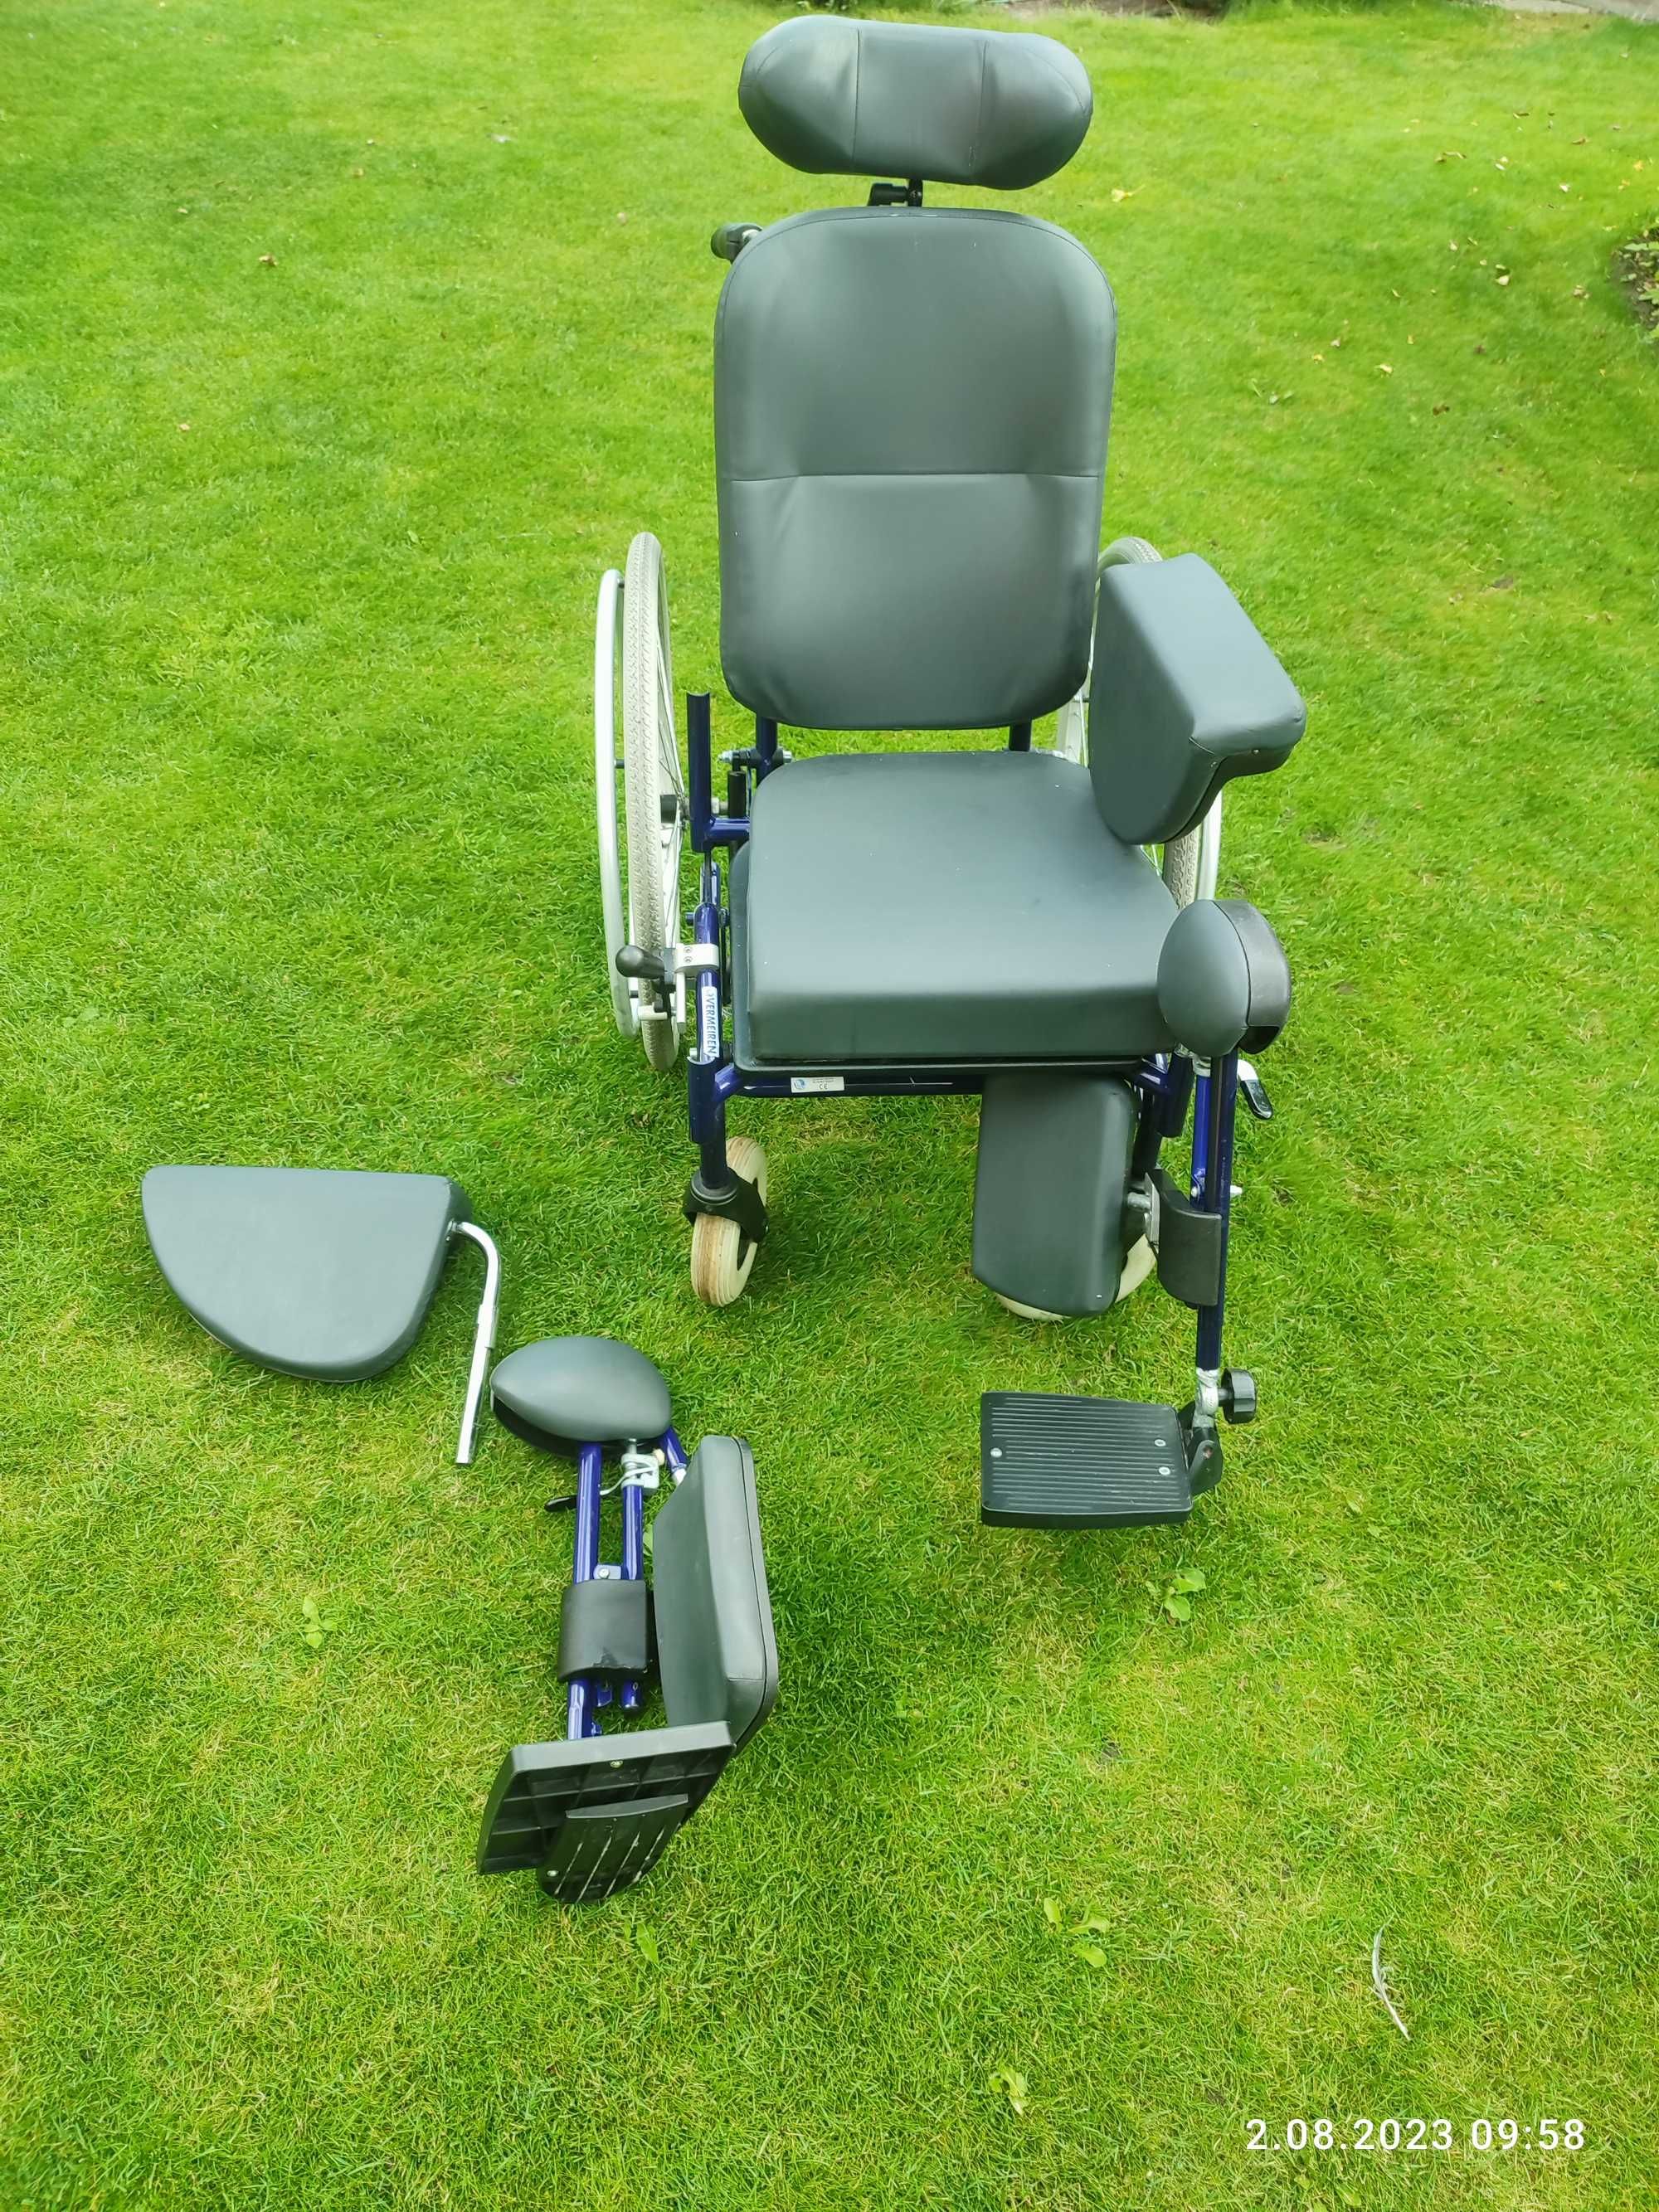 Specjalistyczny wózek inwalidzki VERMEIREN model SERENYS